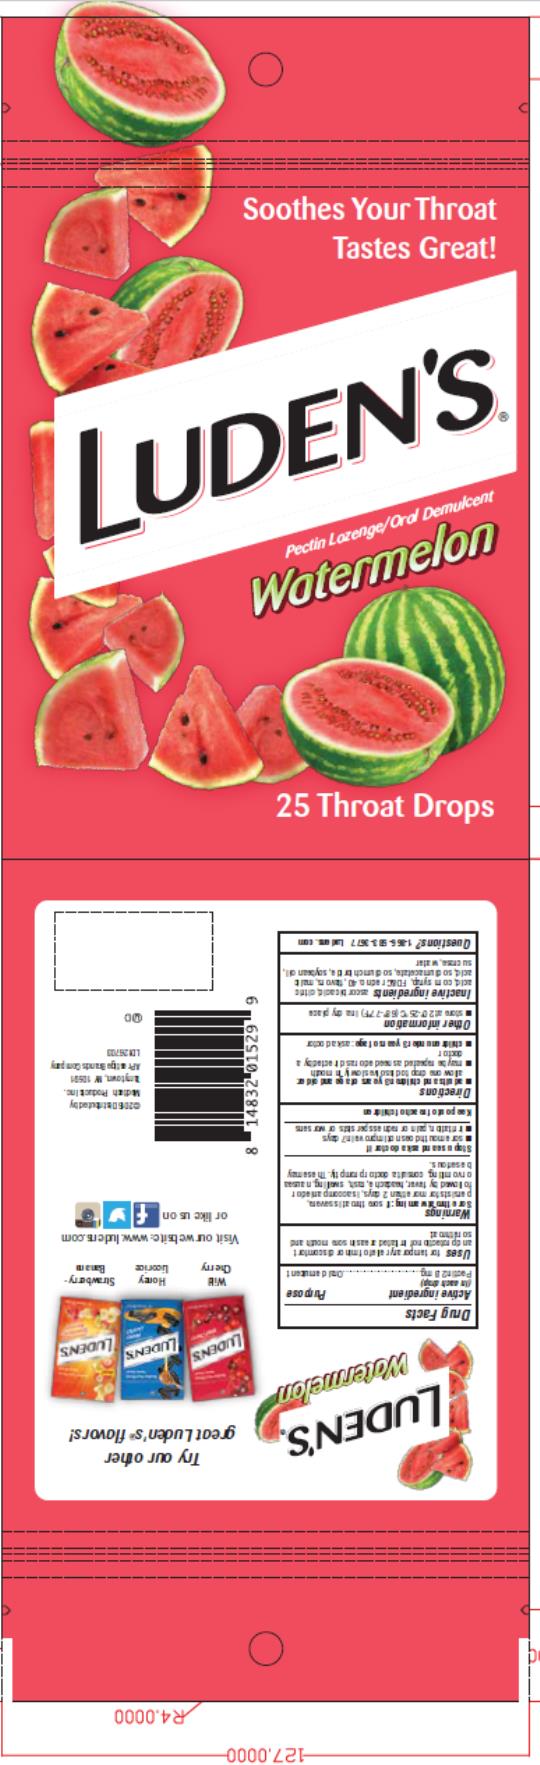 PRINCIPAL DISPLAY PANEL
Luden’s Pectin Lozenge/Oral Demulcent
Watermelon
25 Throat Drops
